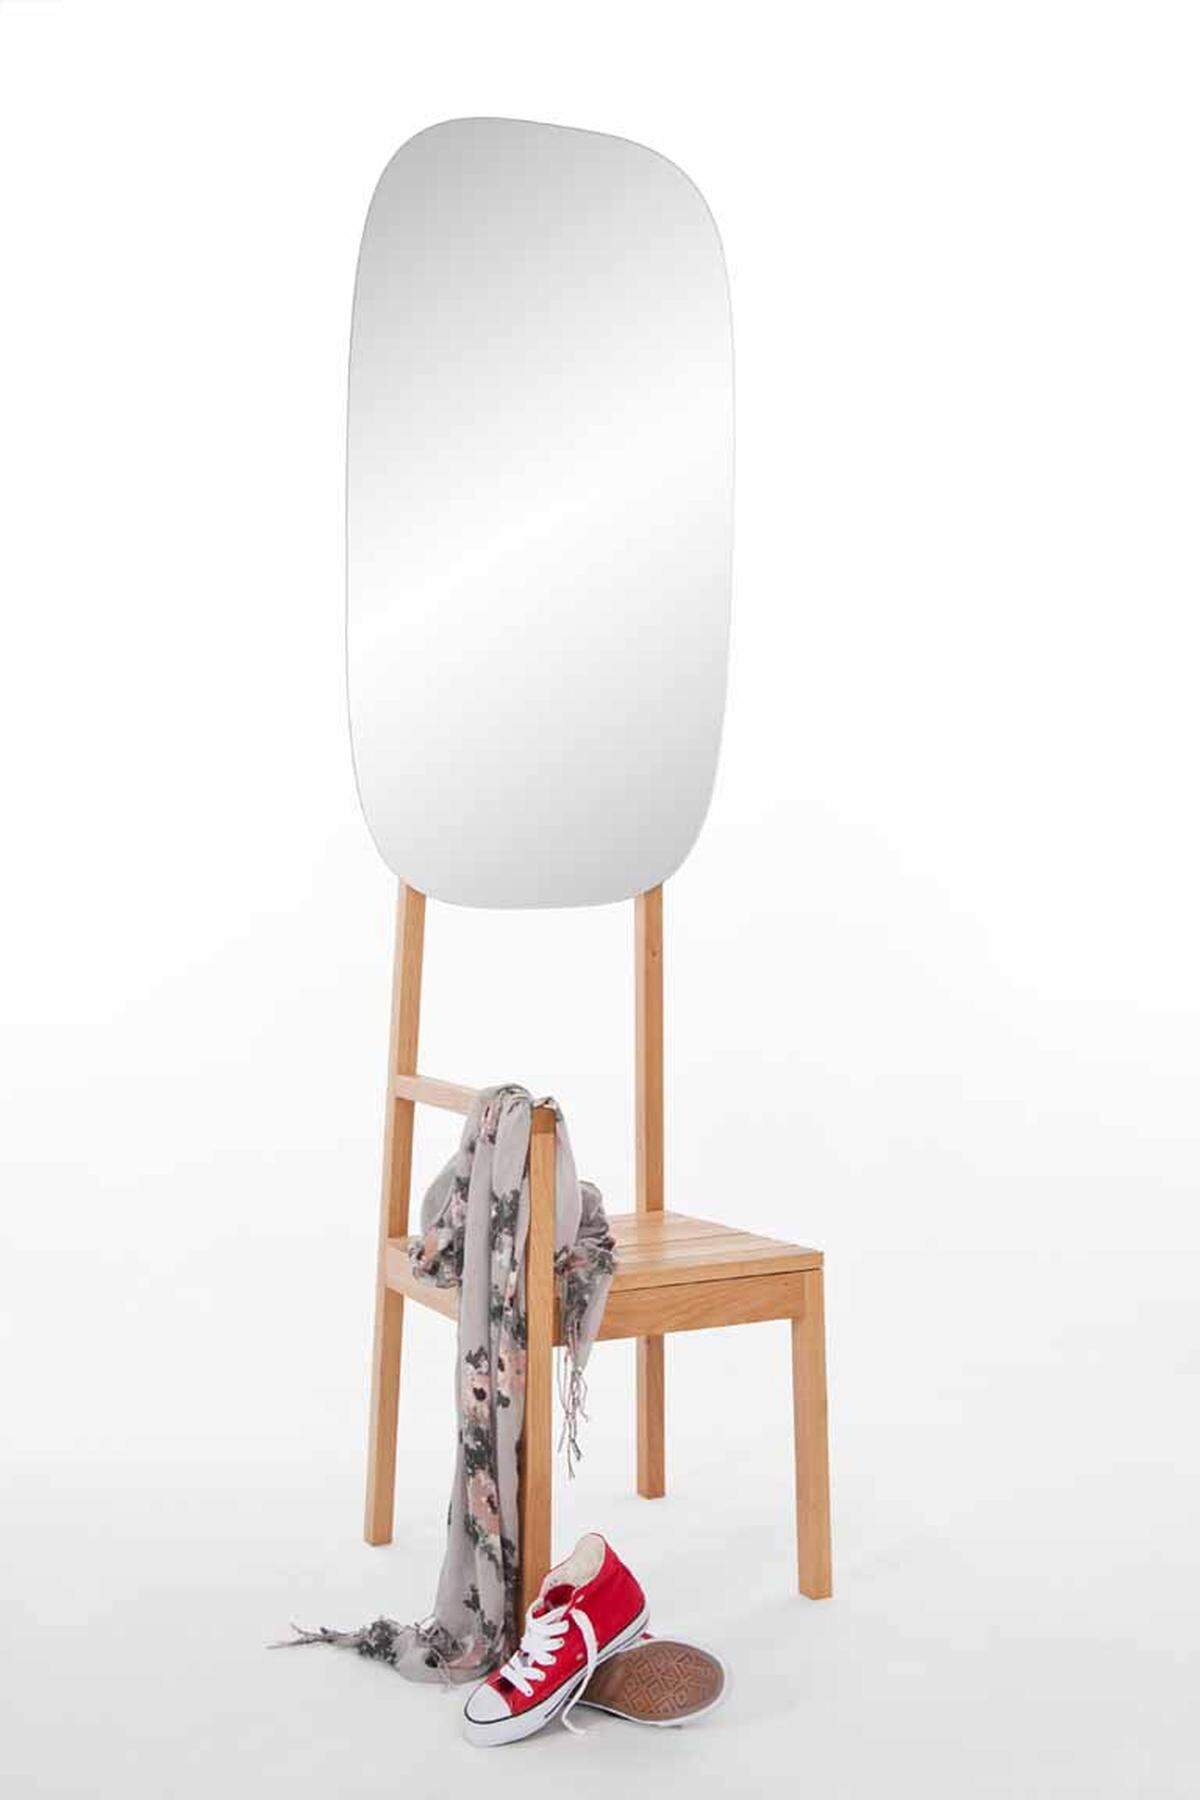 Wer häufig umzieht, wird die Möbelideen von Philipp Beisheim zu schätzen wissen. Für den Aufbau seiner Tische und Sitzgelegenheiten ist lediglich eine Luftpumpe nötig. Das Möbel besteht aus dem Neopren-Stoff Hypalon und Holz.